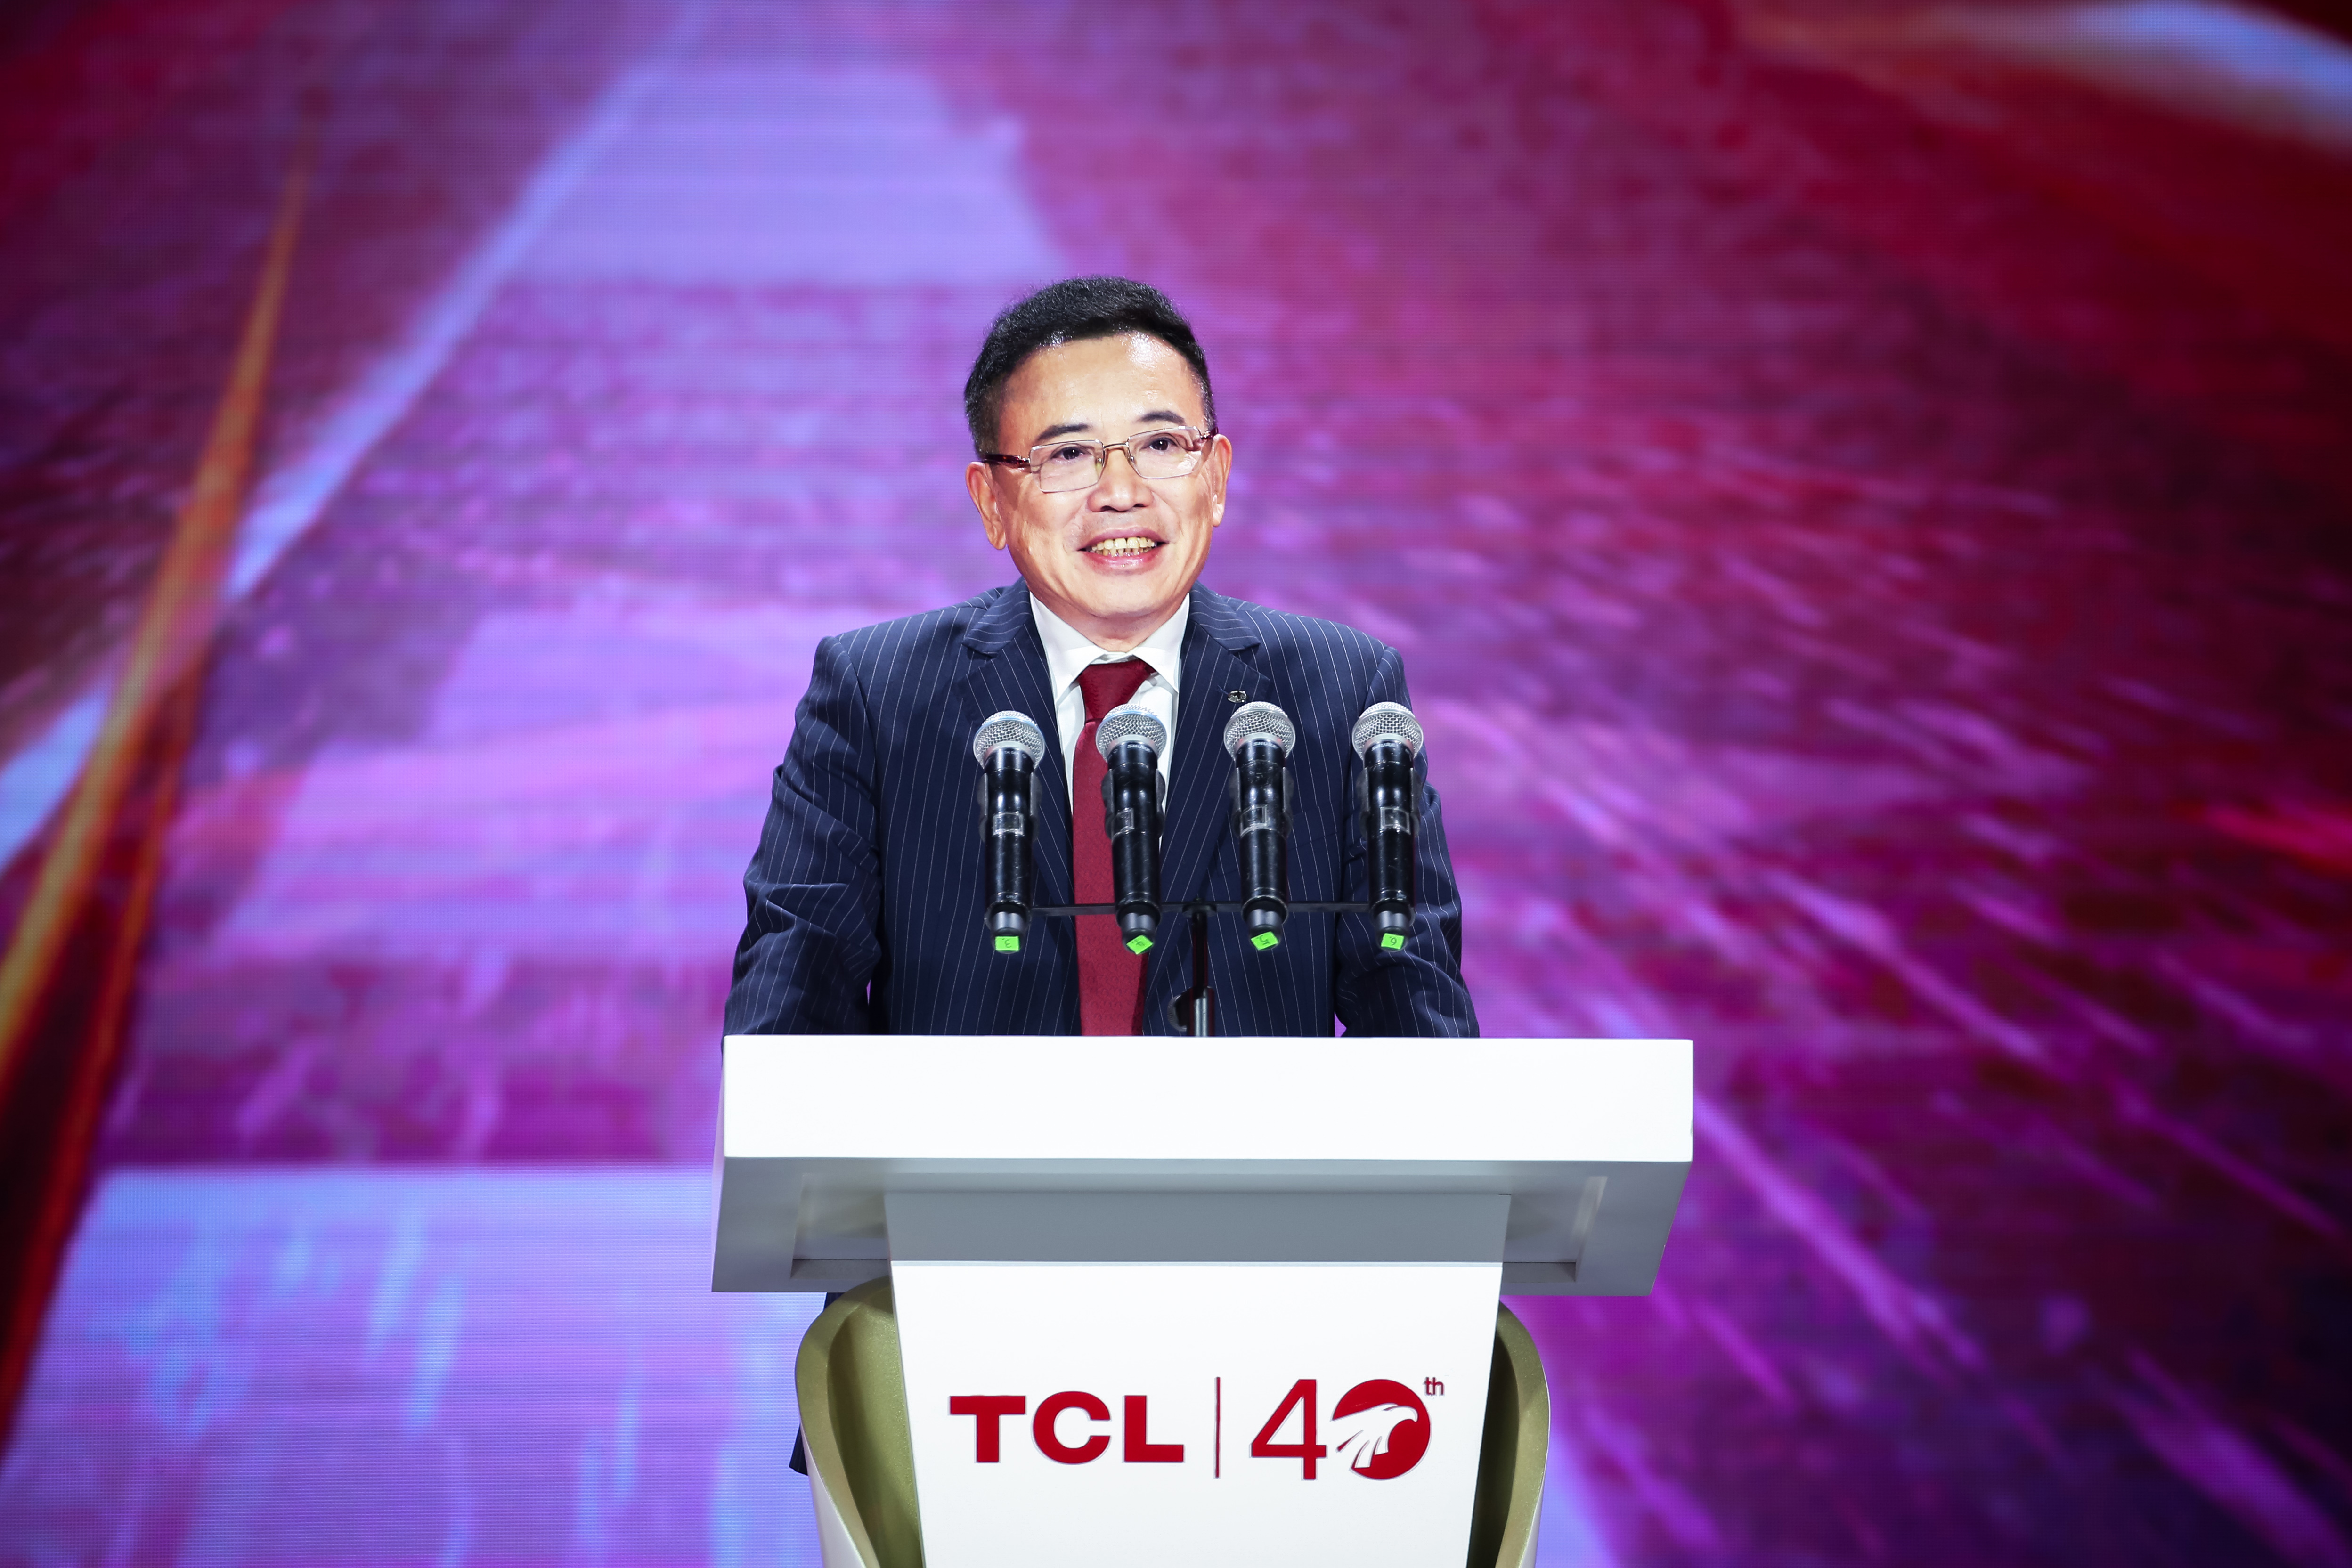 TCL官方授权传记《万物生生》首发  呈现中国企业40年变革逐梦之路 智能公会